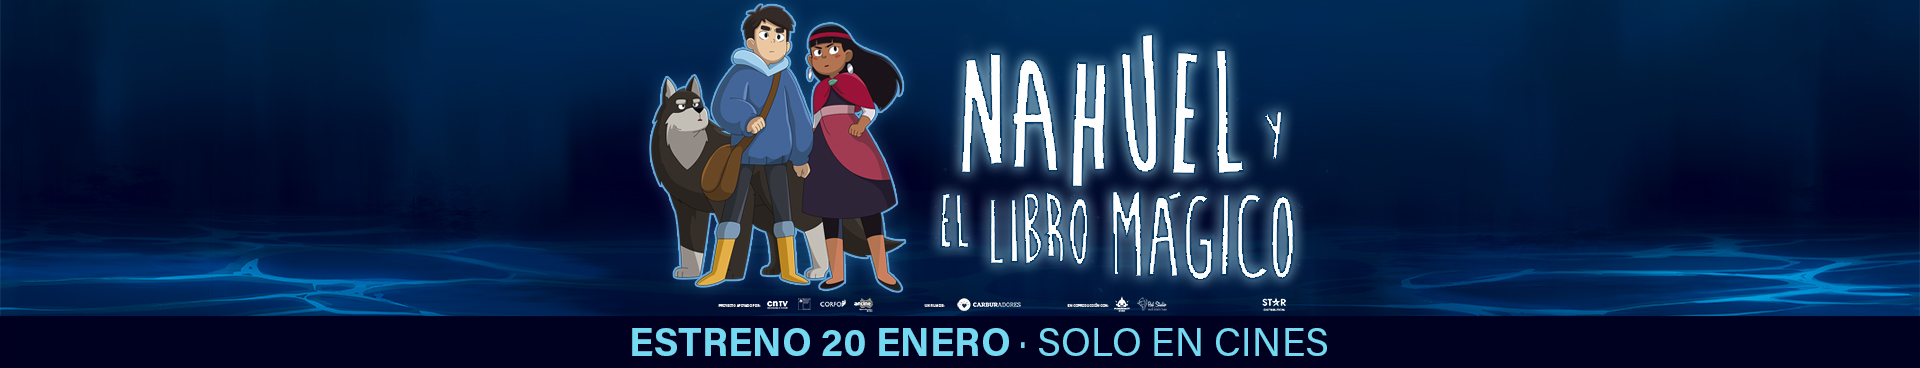 NAHUEL Y EL LIBRO MAGICO